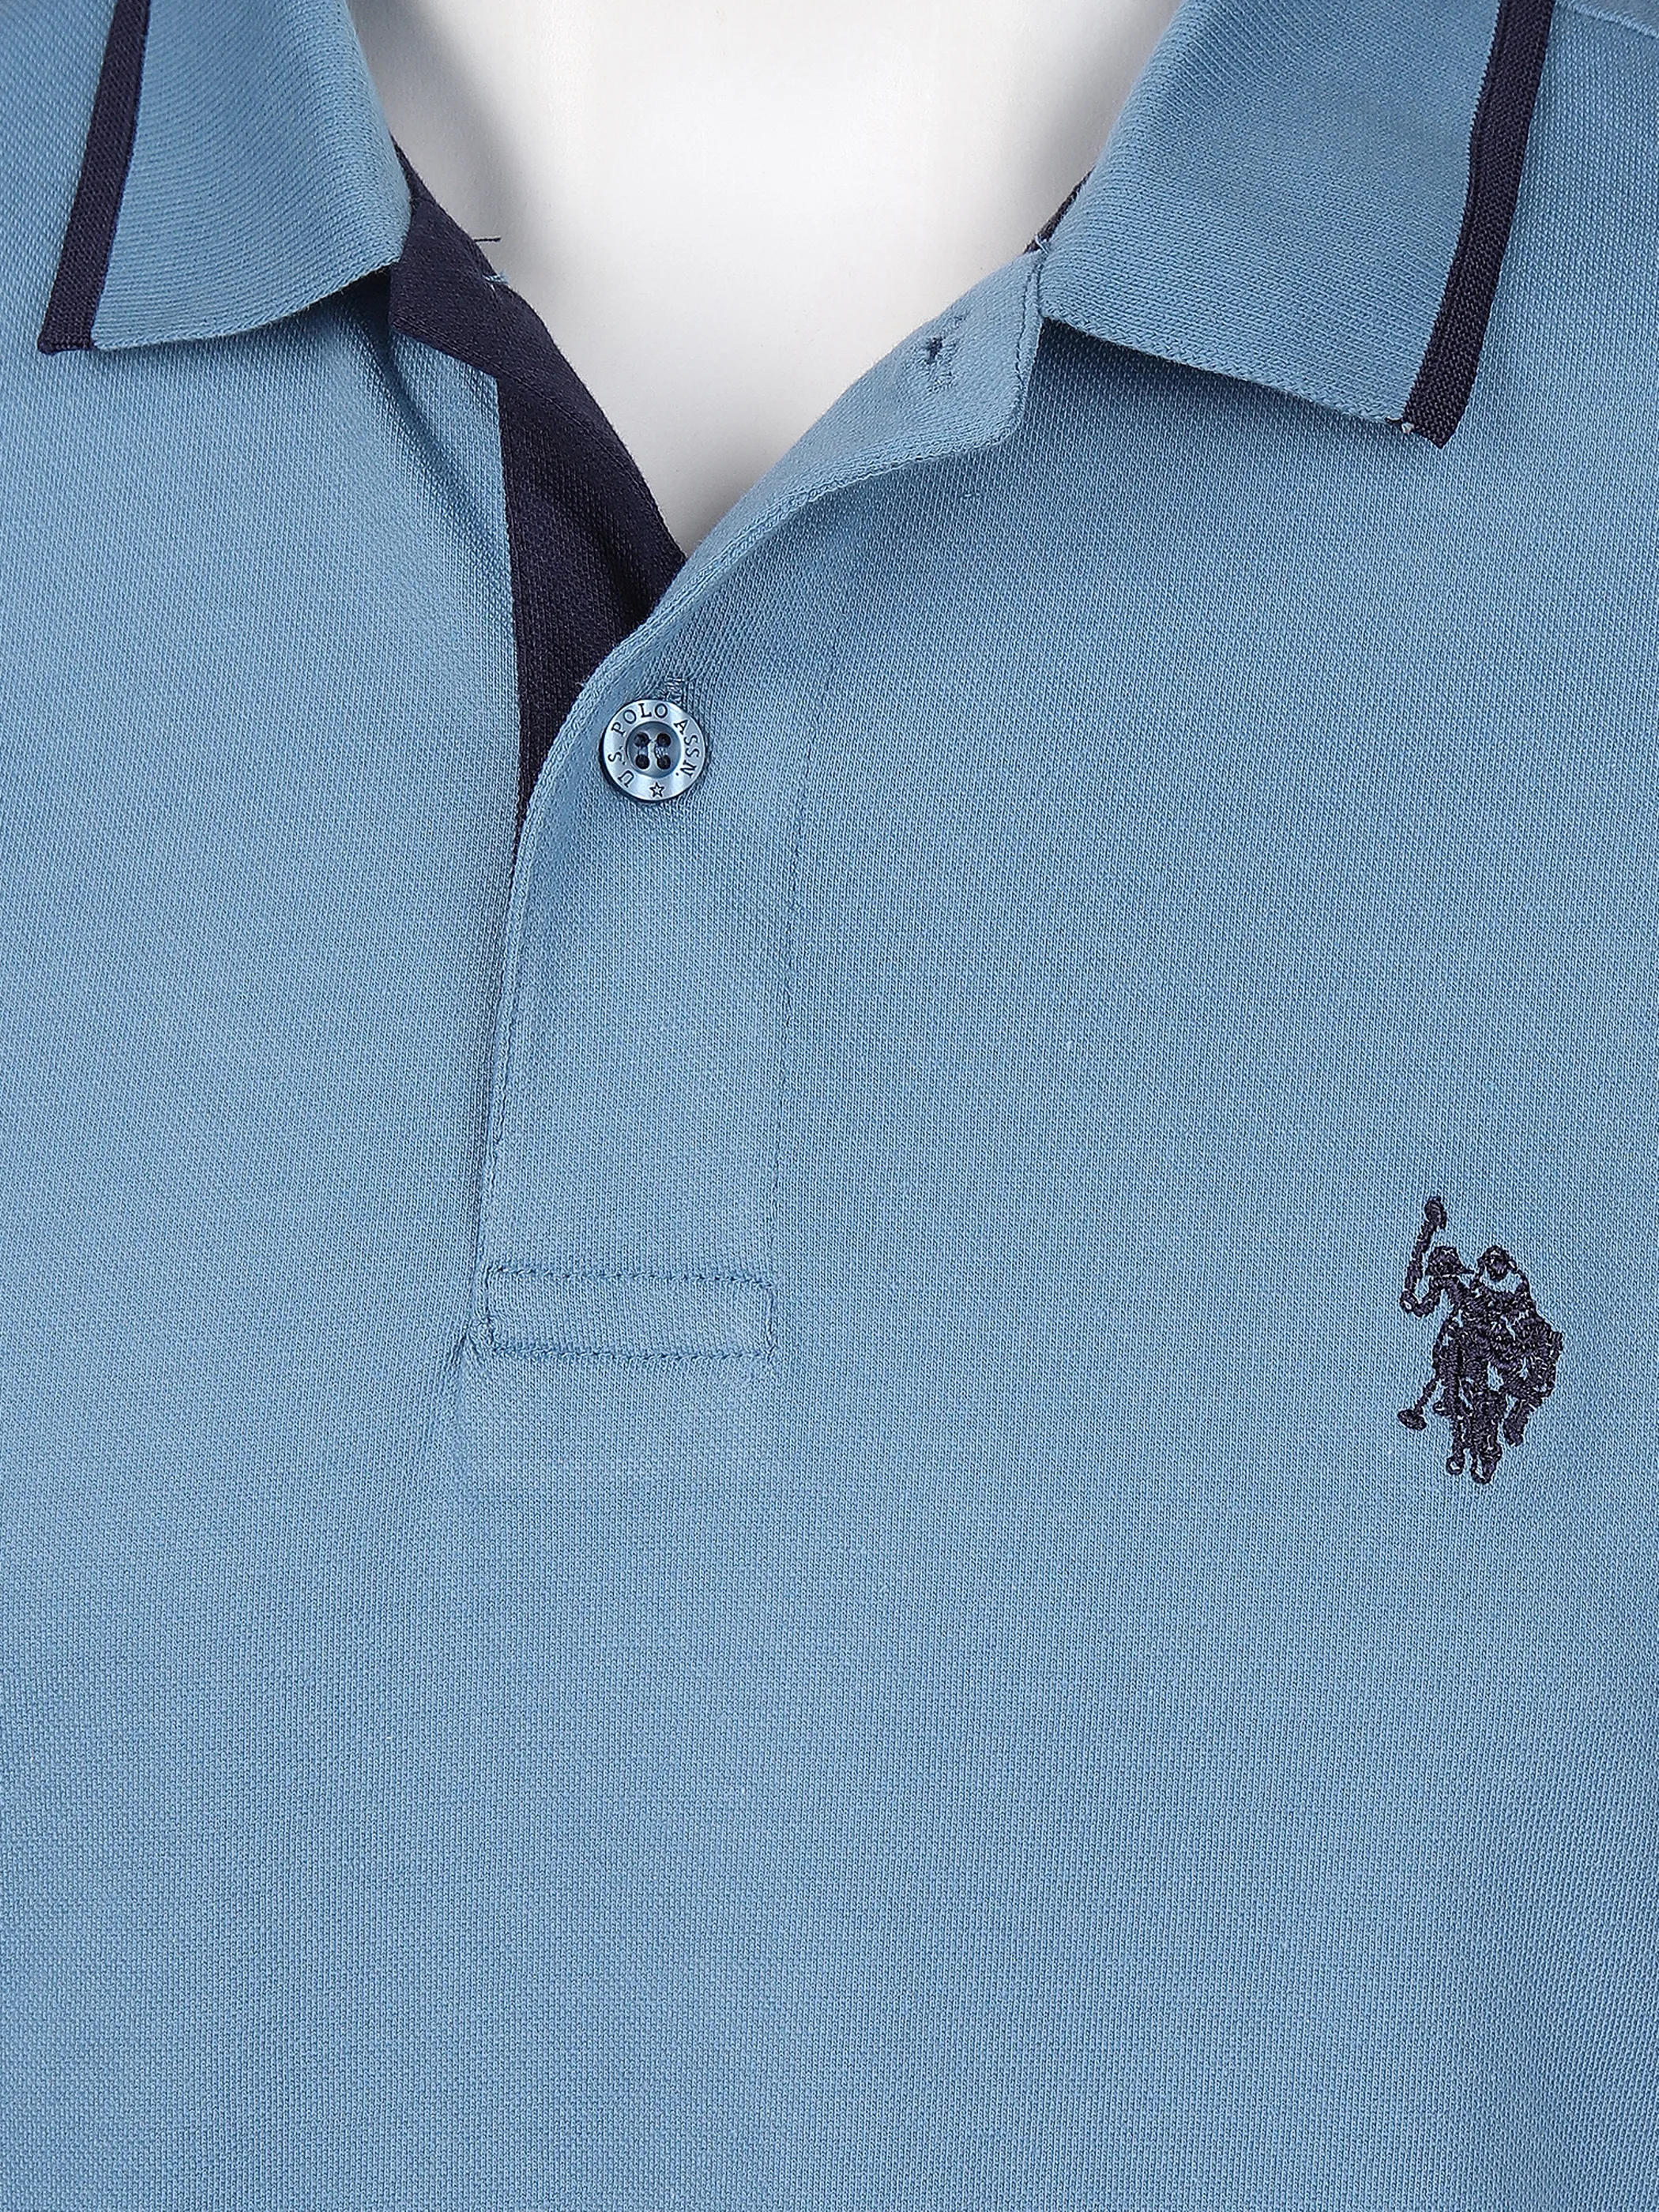 U.S. Polo Assn. He. Poloshirt 1/2 Arm uni Blau 861379 132 BLUE 3